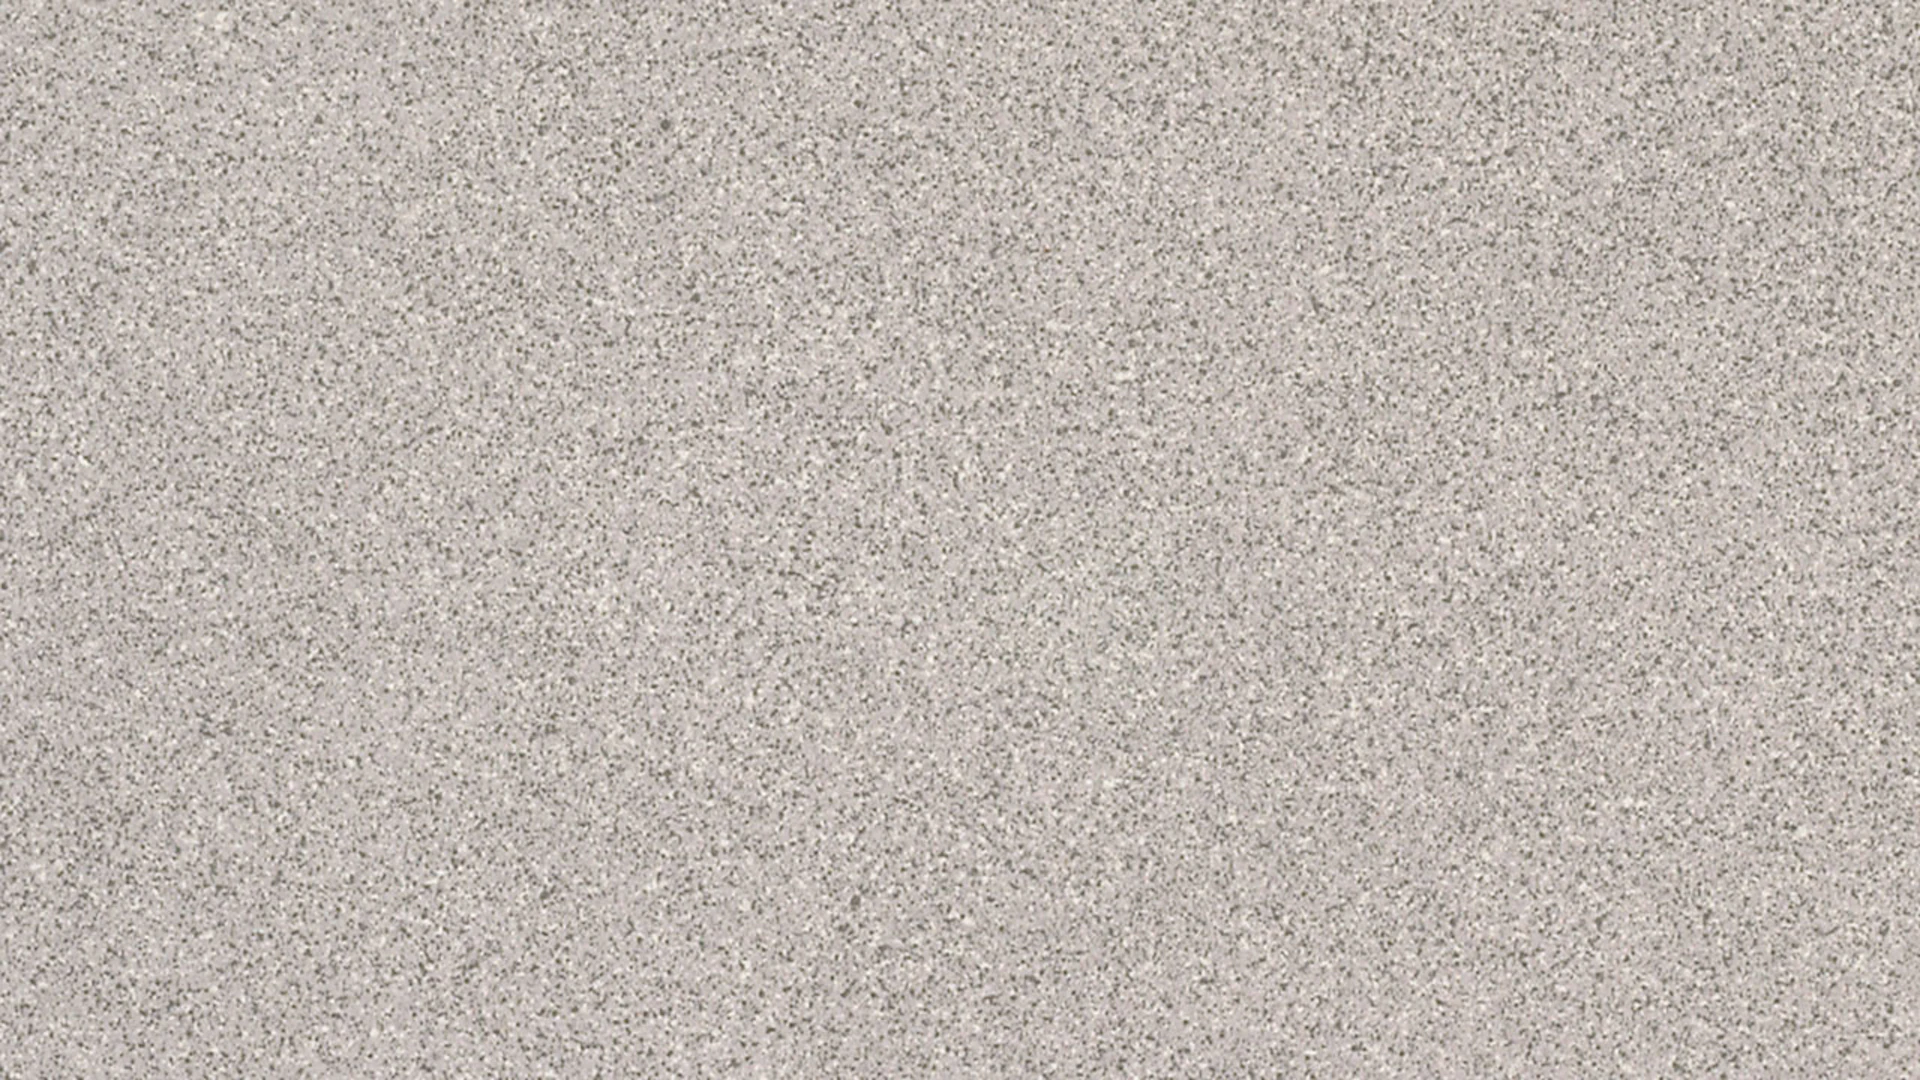 Gerflor PVC floor - CLEVER/FOCUS SILICE GRIS - 0111